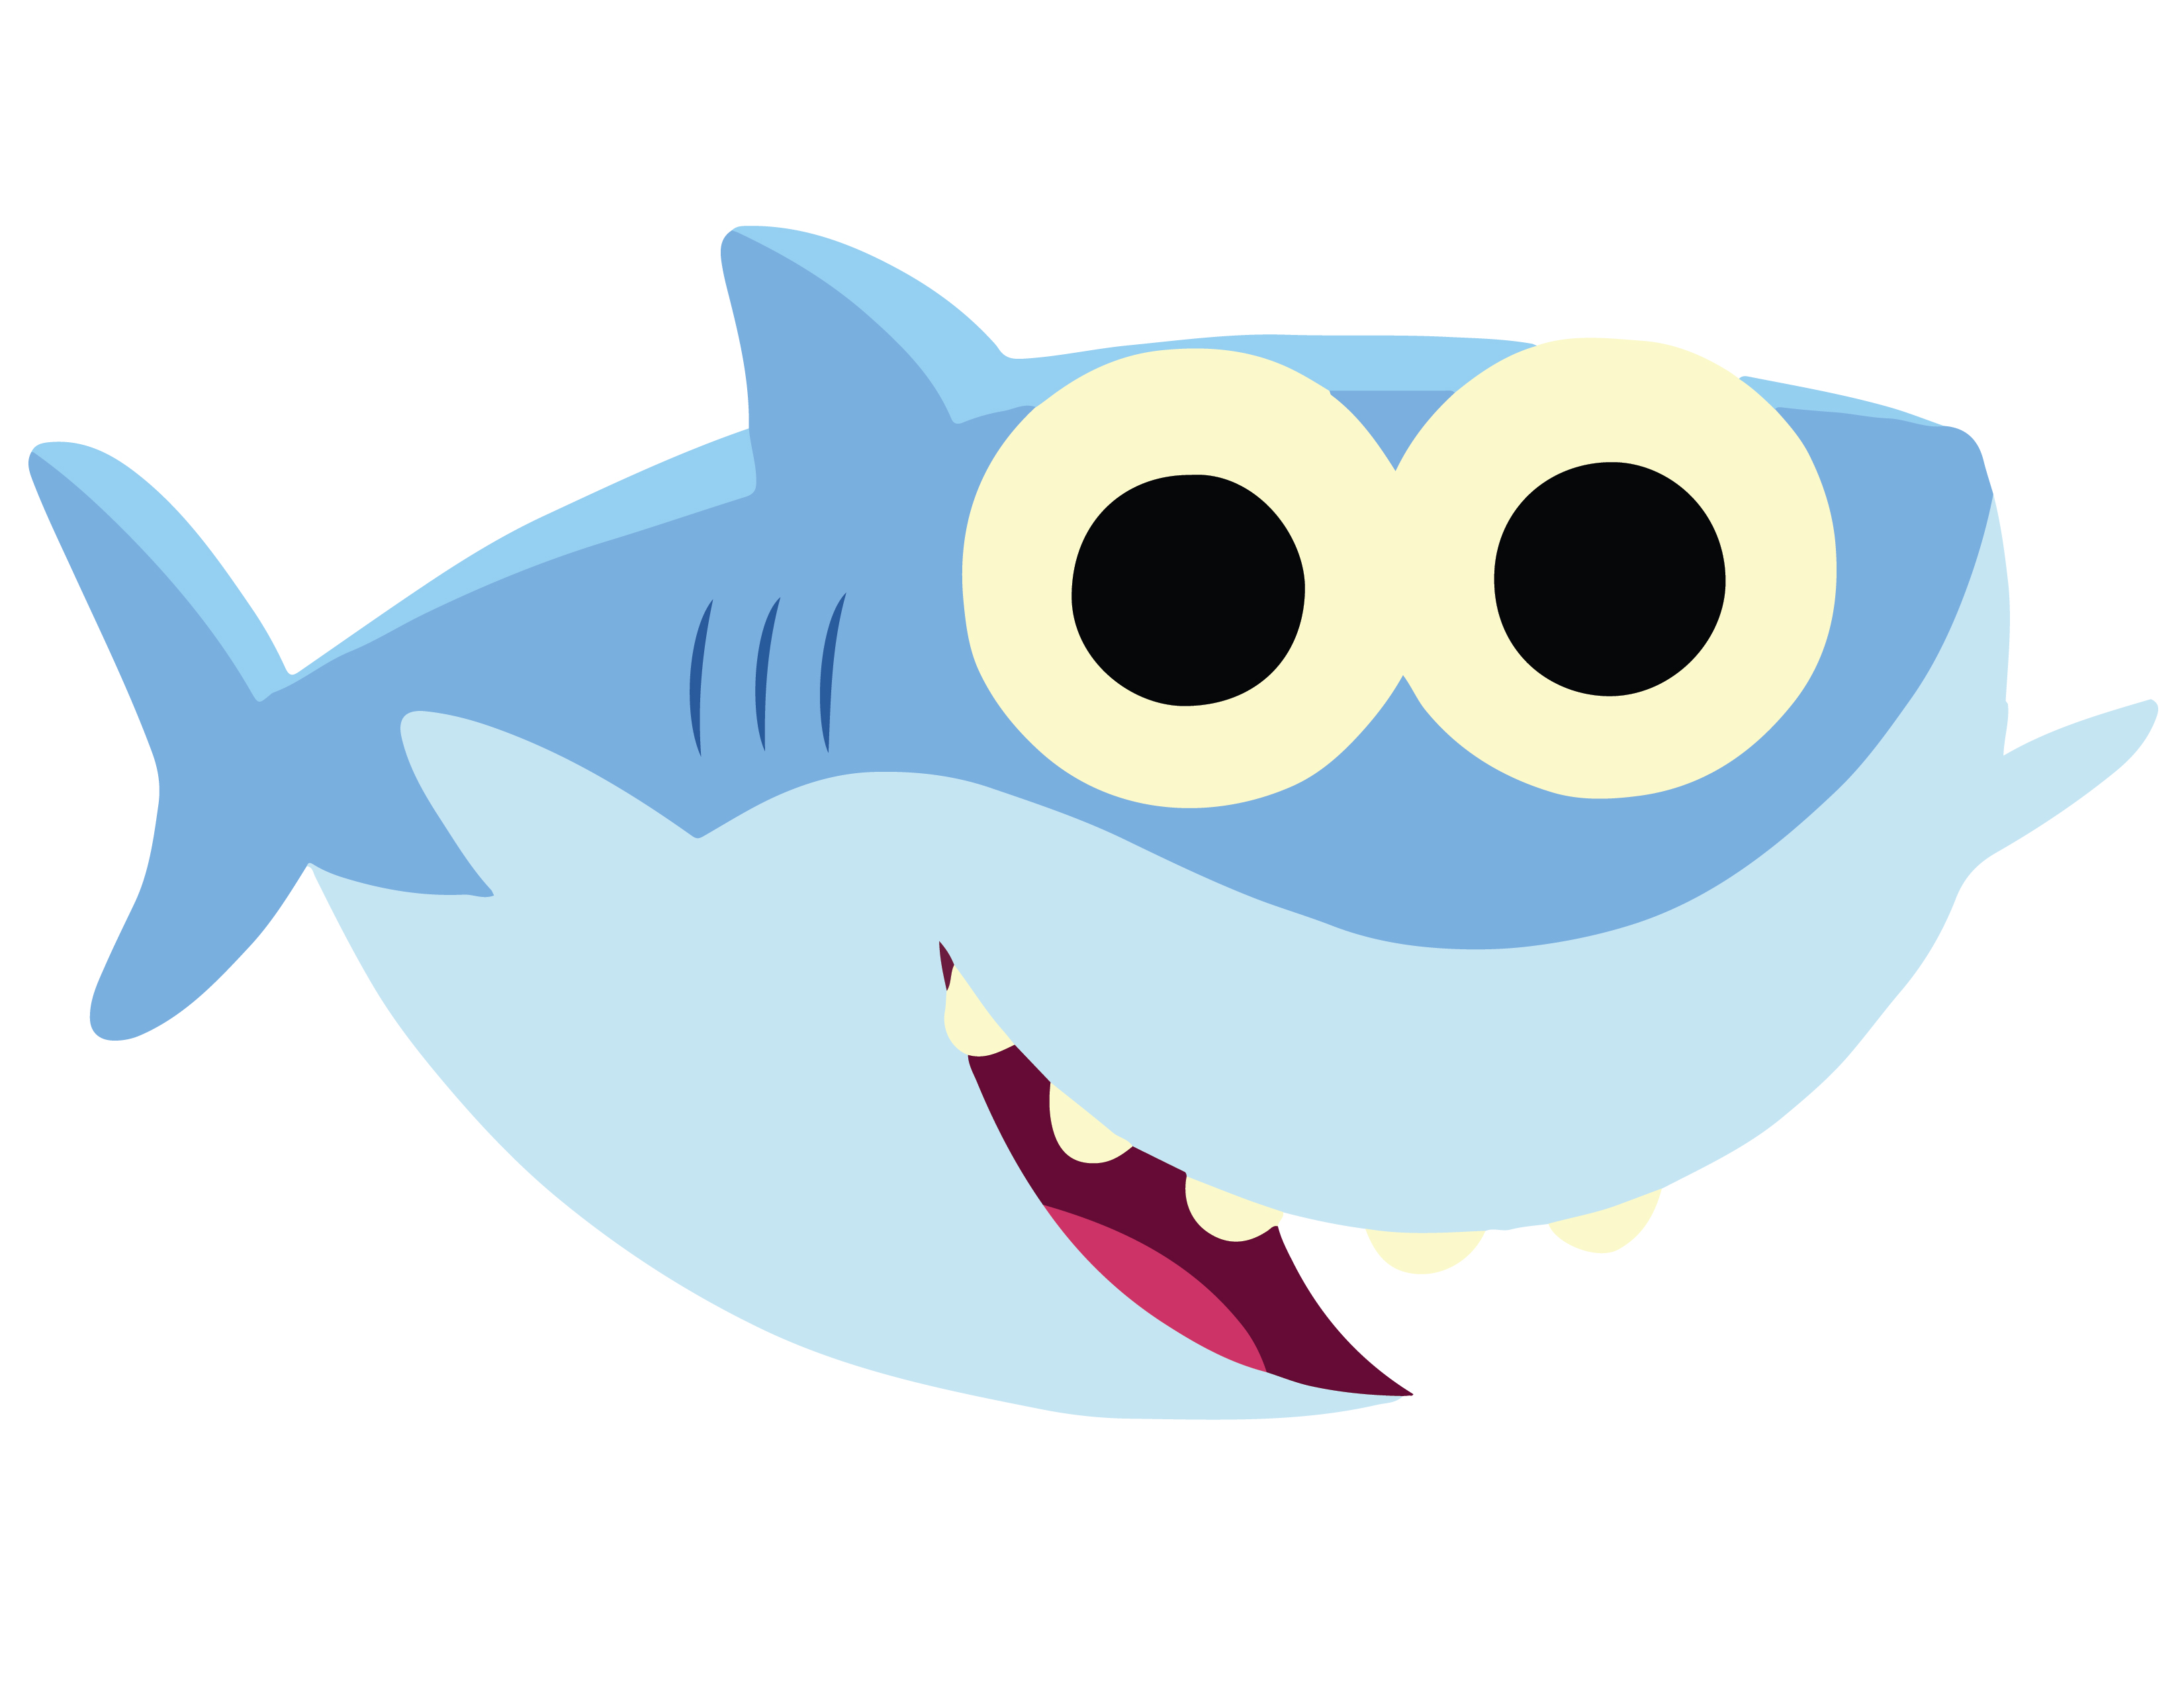 Baby shark simple song. Baby Shark Акуленок. Бэби Шарк герои. Акуленок туруру герои. Акуленок туруруру бэби Шарк.